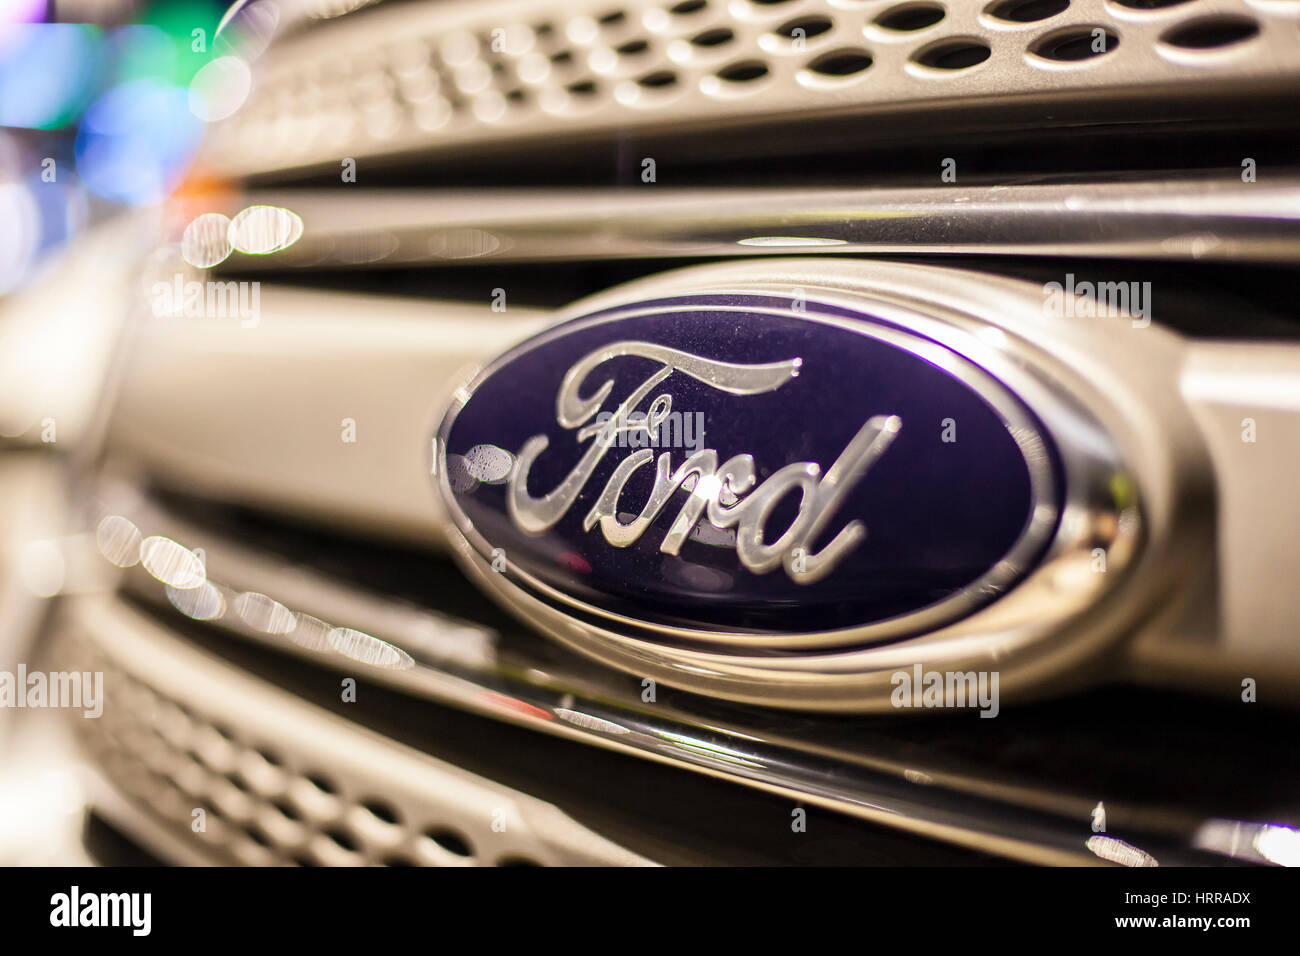 ABU DHABI, UAE - NOV 26, 2016 : Ford company logo sur une voiture éclairée la nuit Banque D'Images